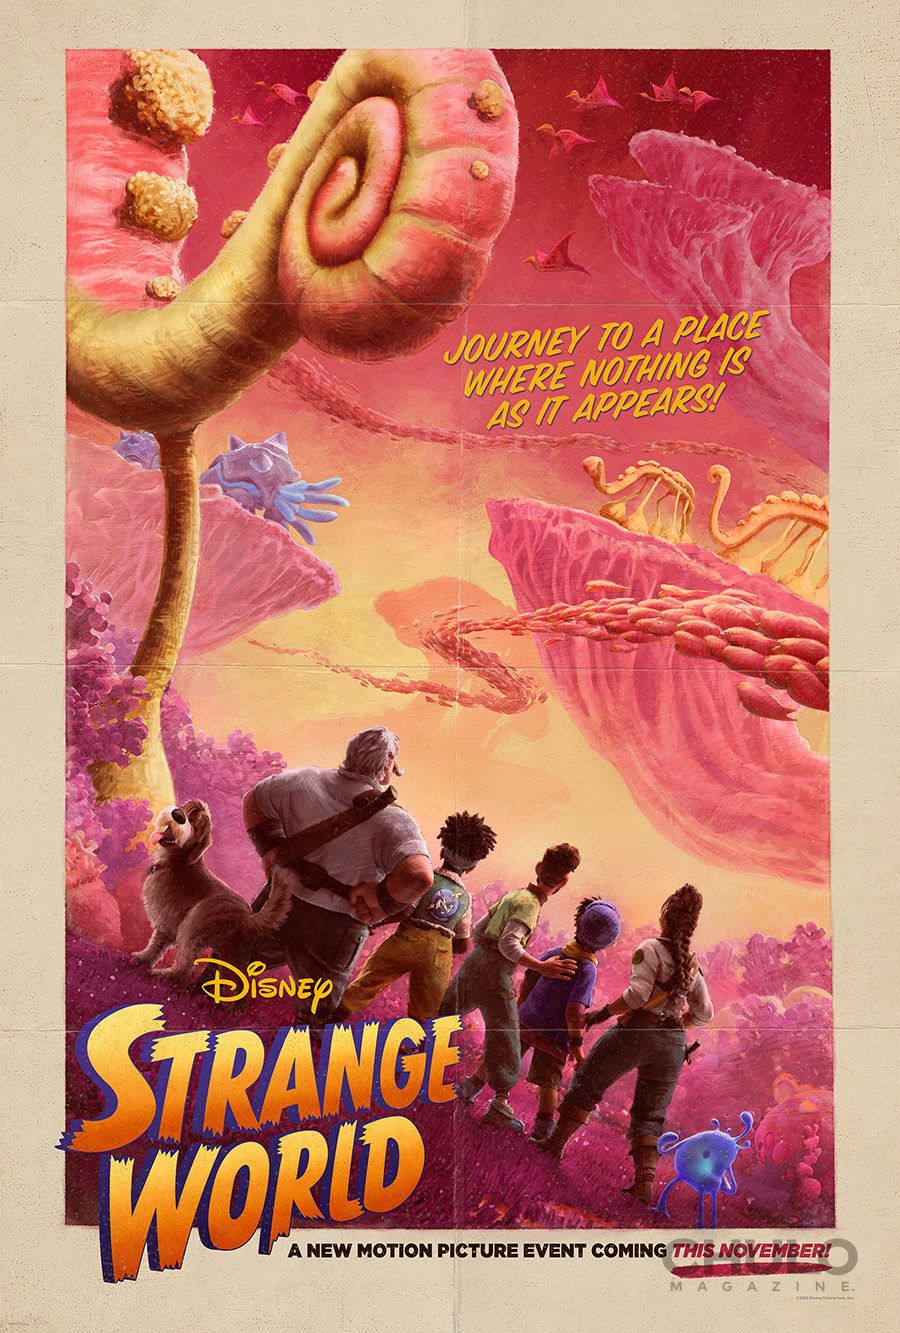 Strange World trailer